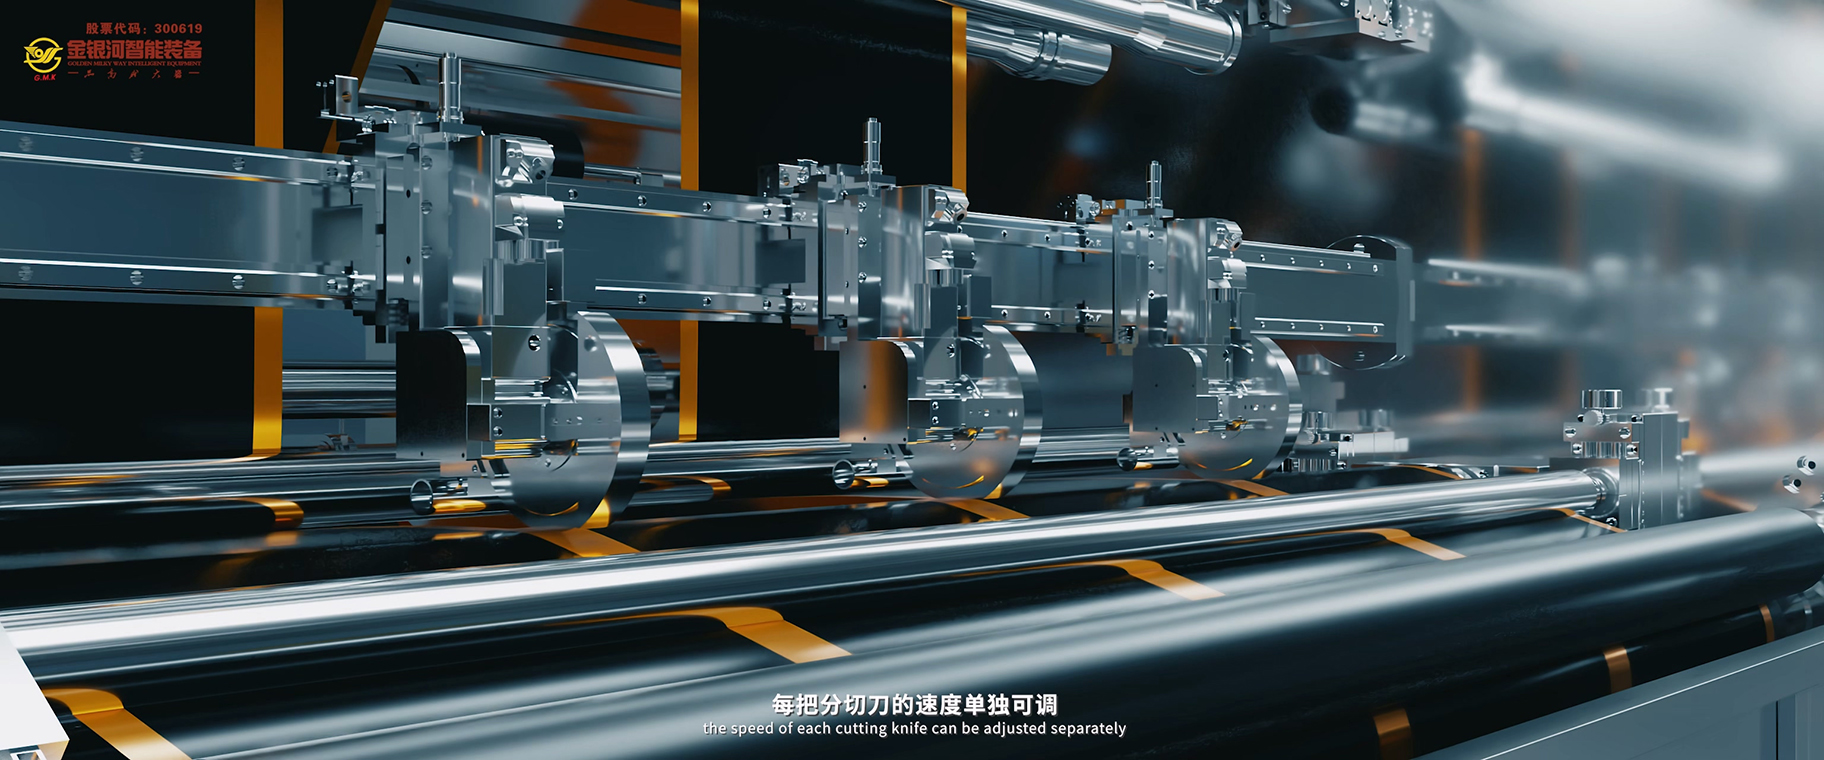 广州市广州荔湾区3D工程机械设备装配动画三维演示公司厂家